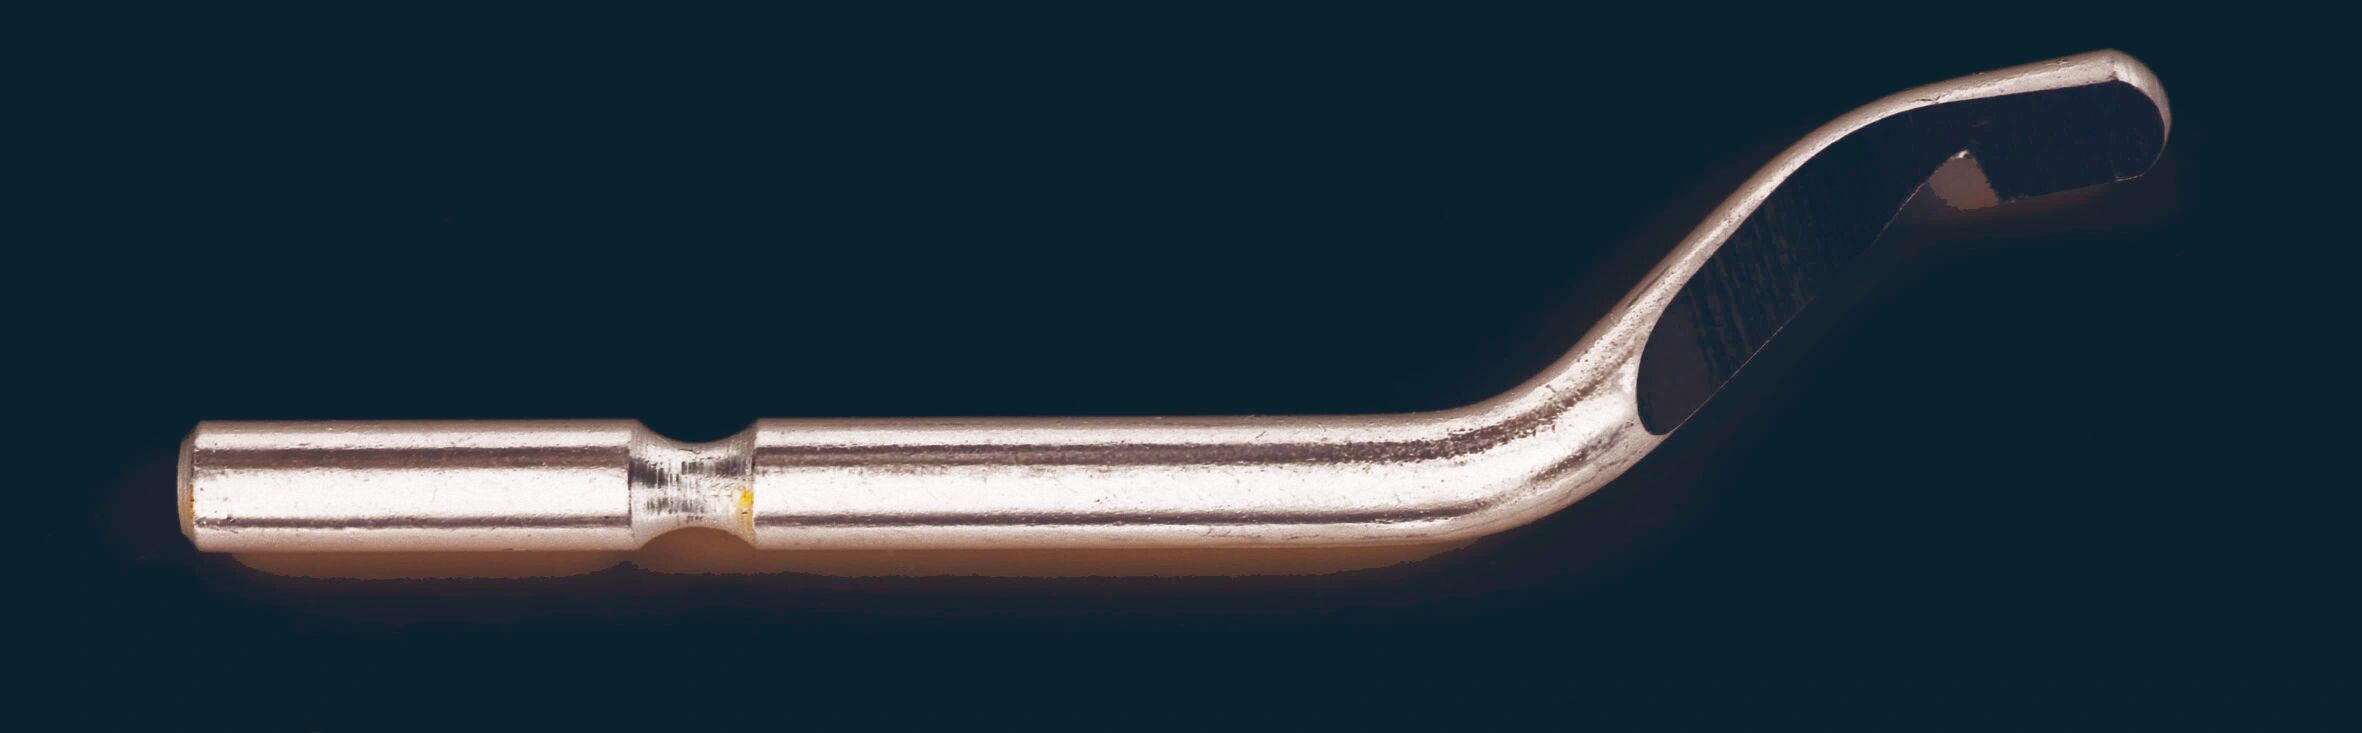 NOGA Nůž S (průměr 3,2 mm), pro leváky i praváky